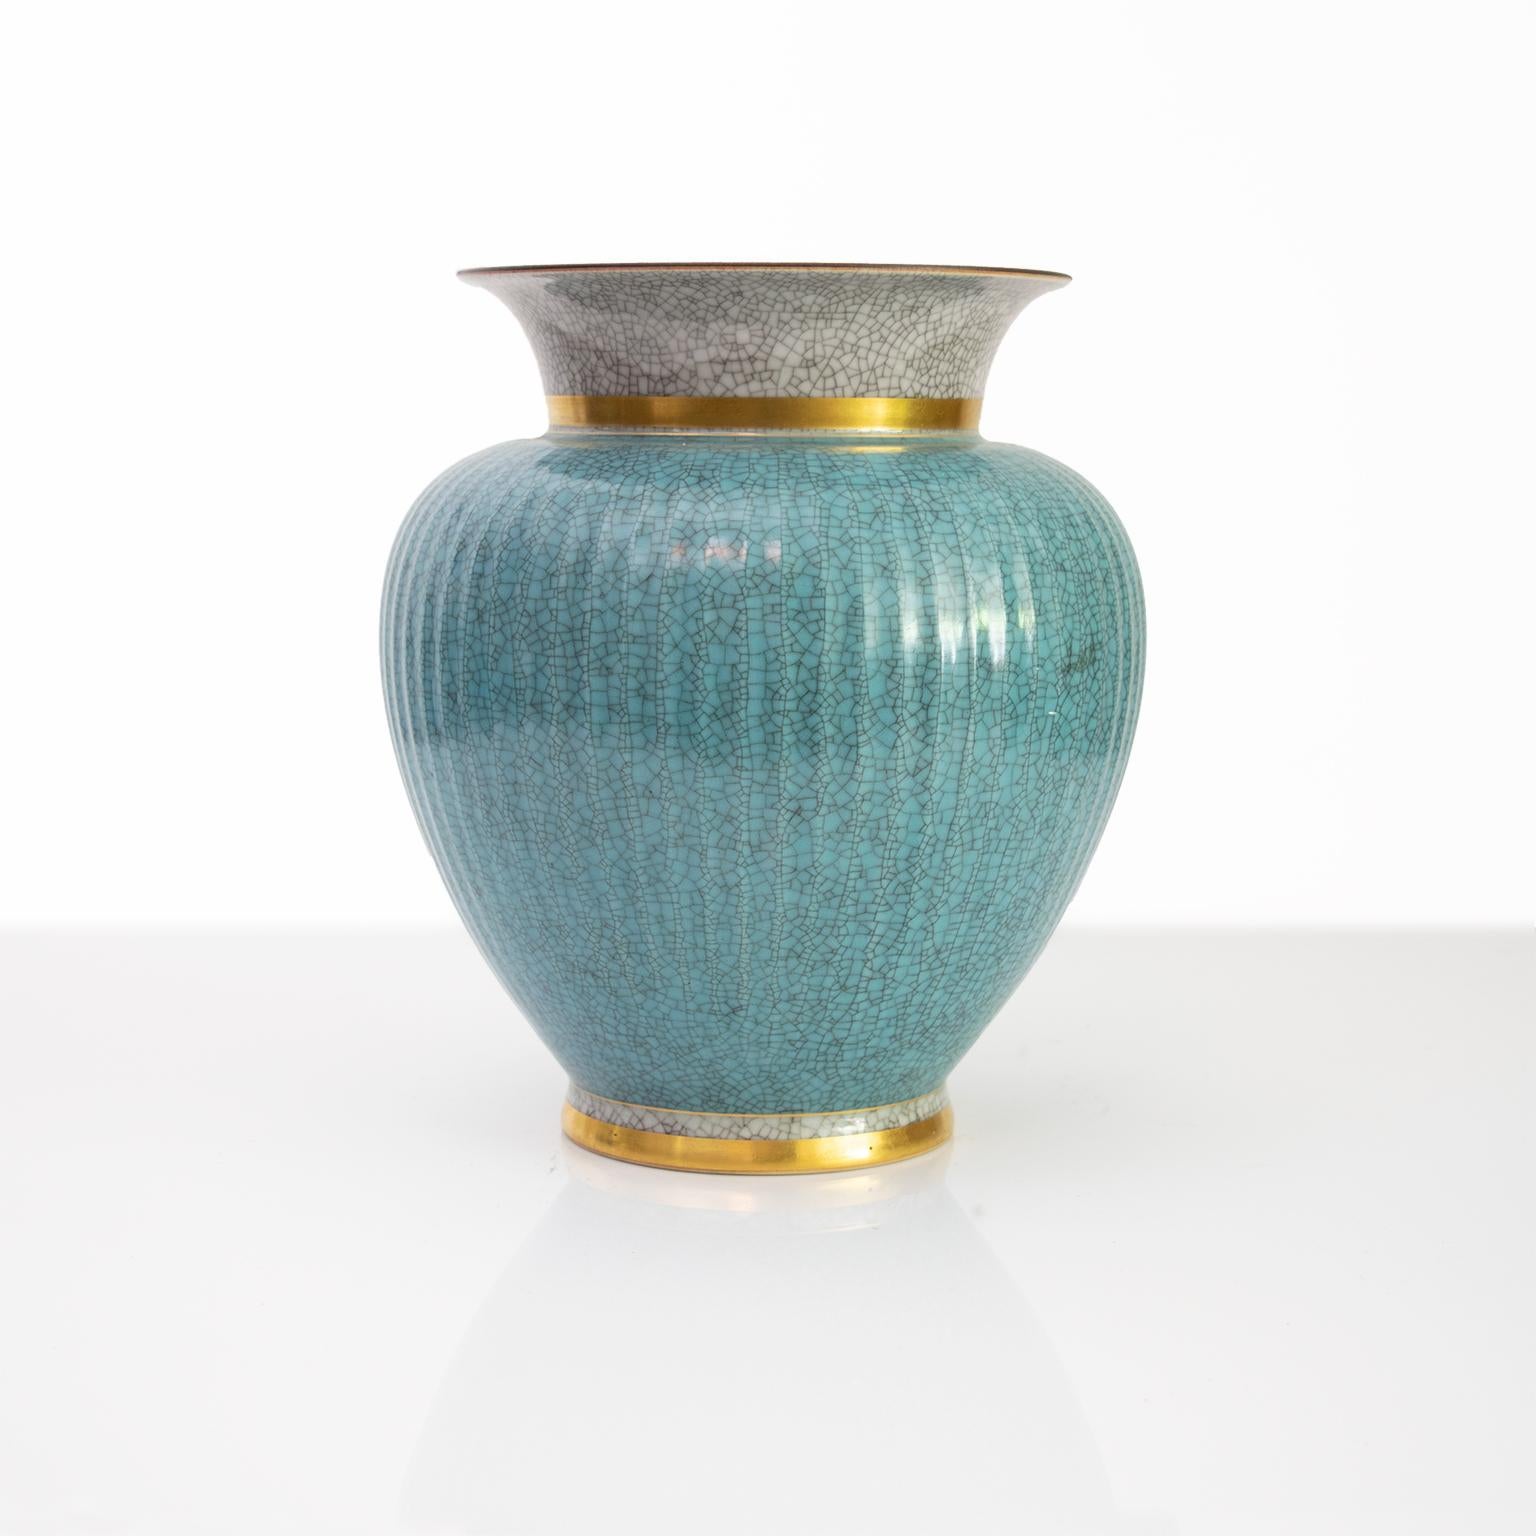 Große Royal Copenhagen Keramik-Vase in blau und grau (craquelure) Craquelé-Glasur und detailliert in Gold. Hergestellt in Dänemark, ca. 1940er Jahre.

Maße: Höhe 9,5